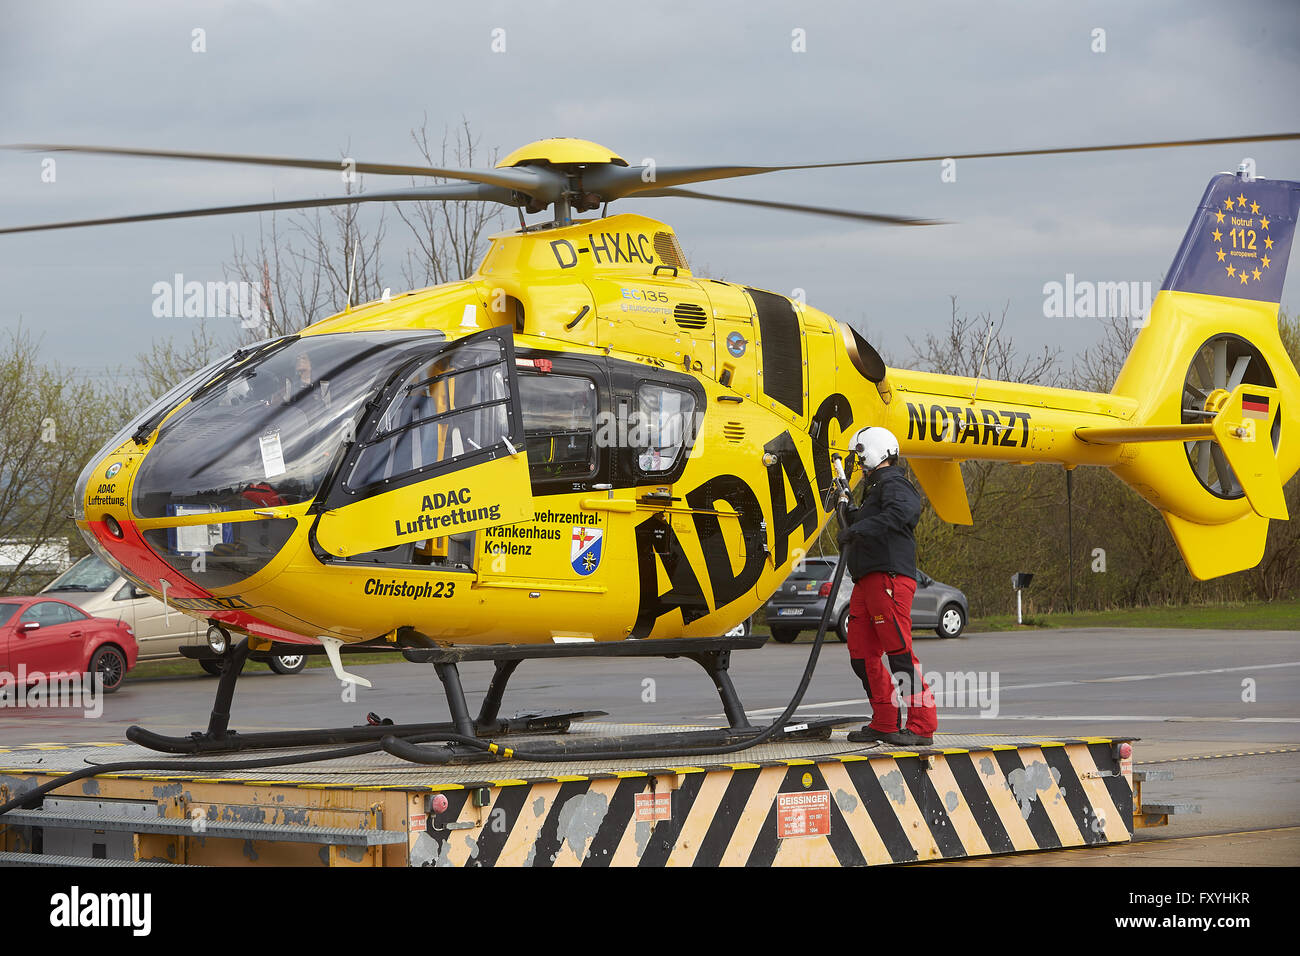 Hélicoptère de sauvetage ADAC Eurocopter EC 135, ravitaillement air rescue, urgence, Allemagne Banque D'Images